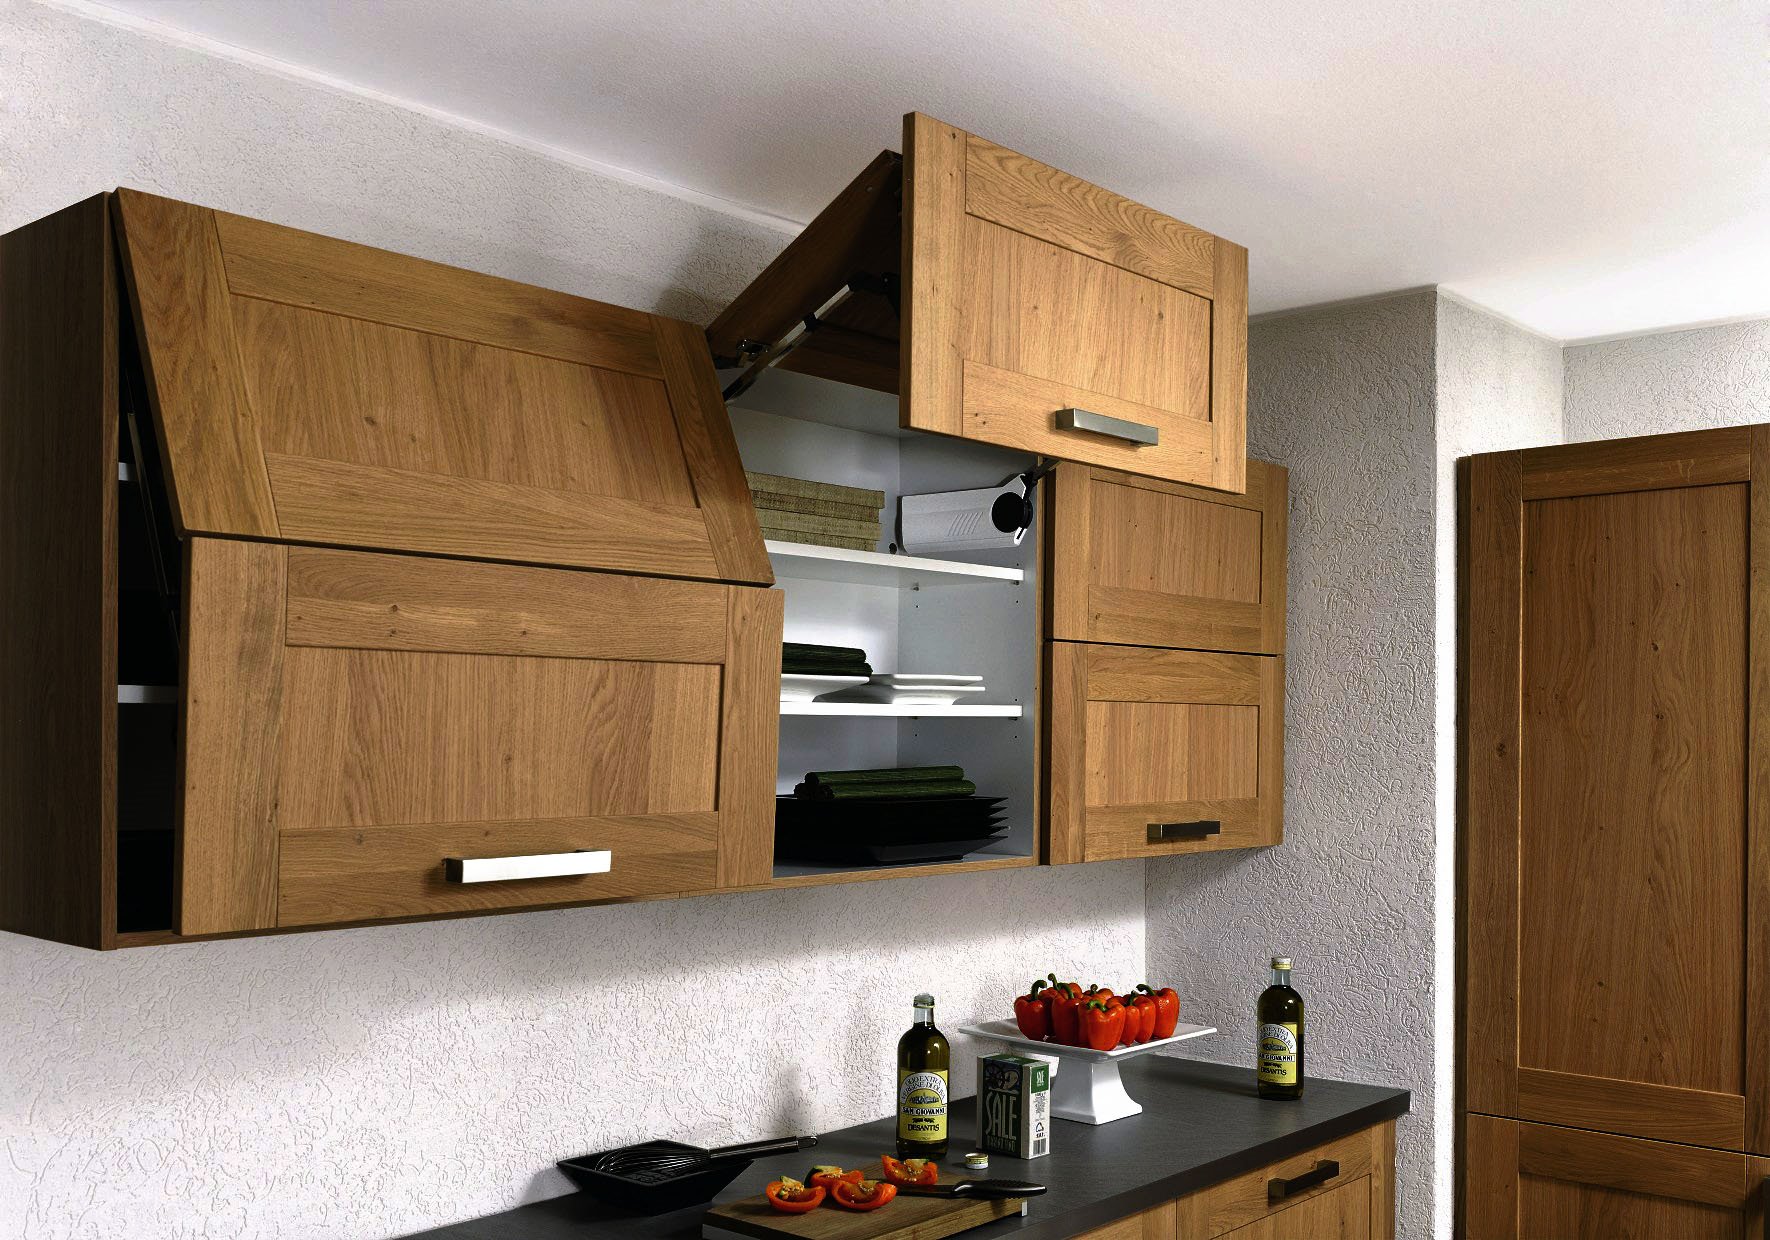 узкие навесные шкафы для кухни в интерьере